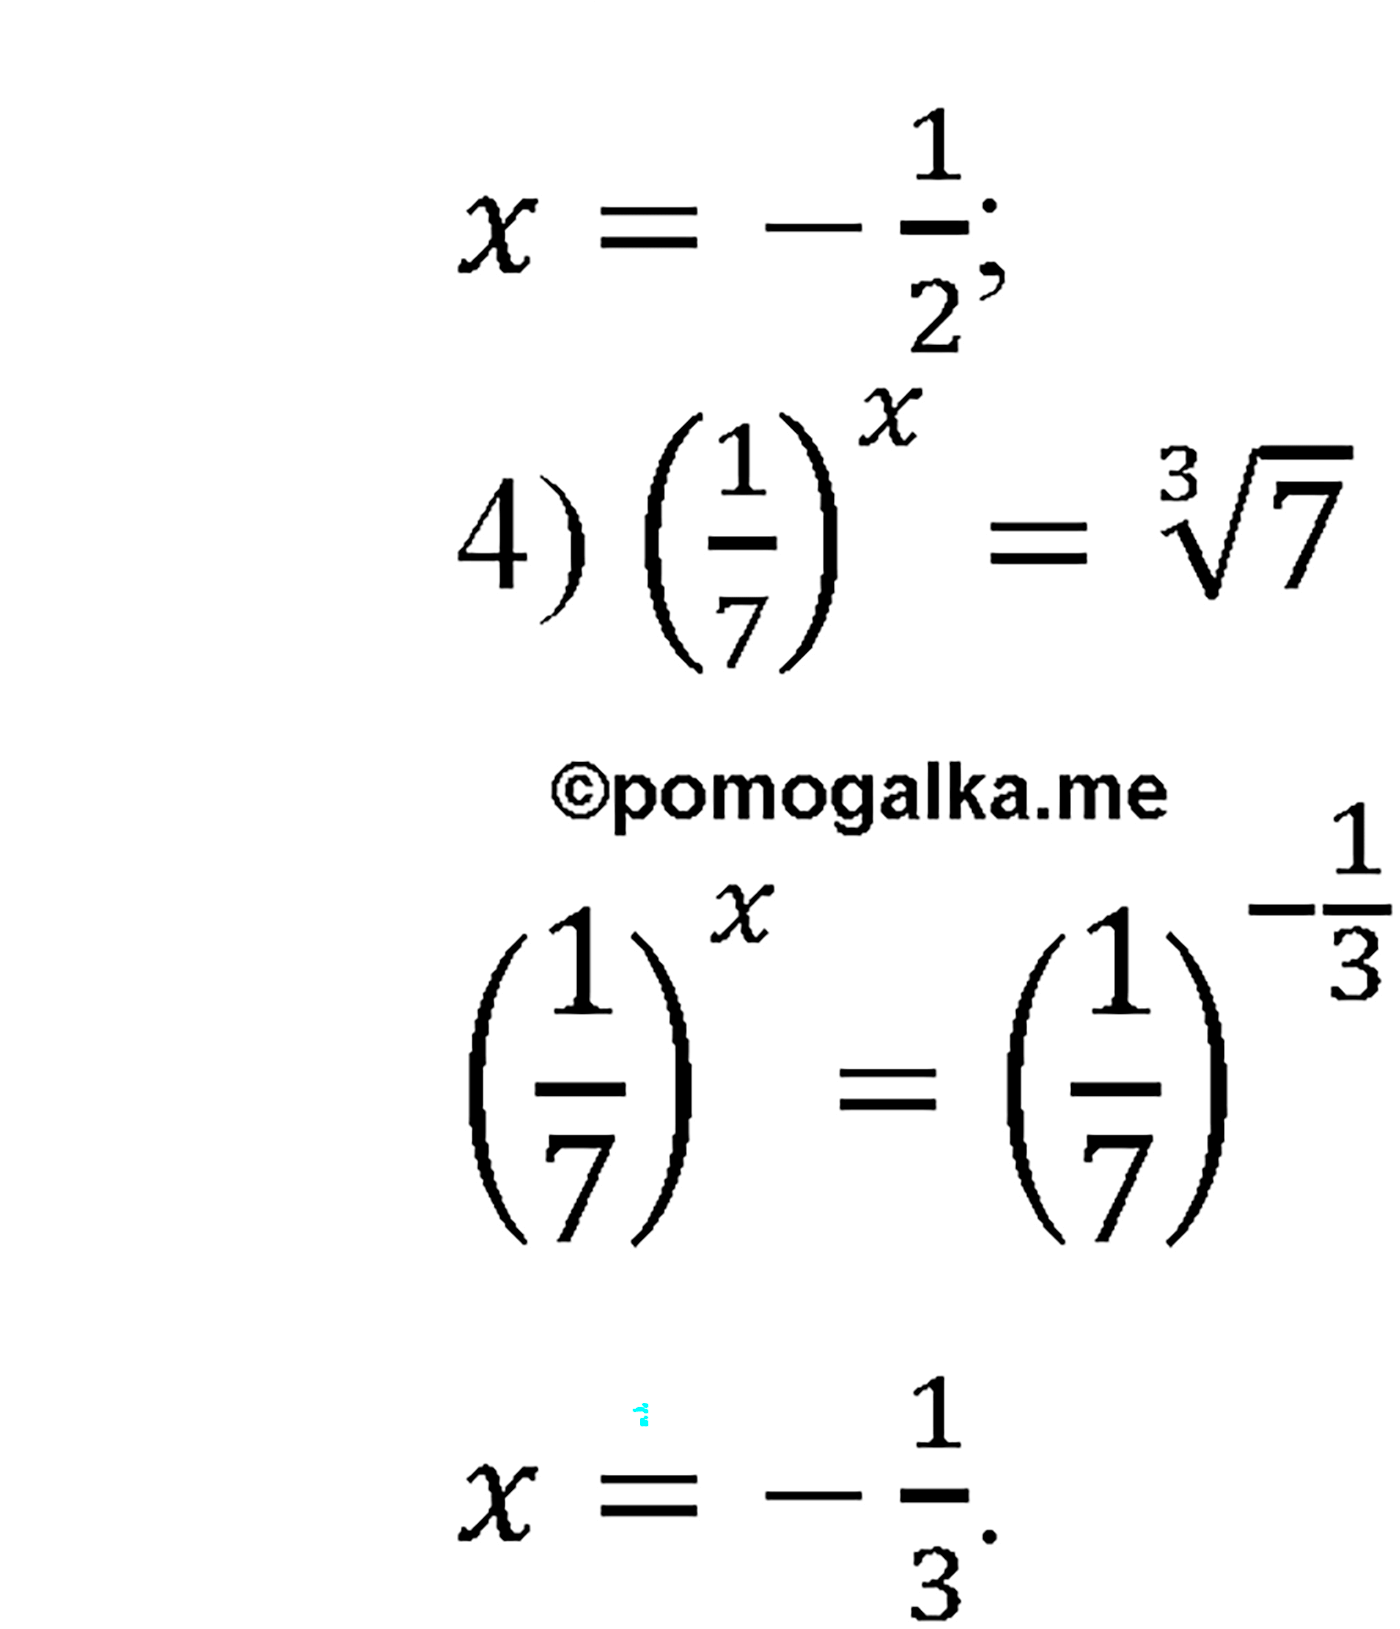 разбор задачи №198 по алгебре за 10-11 класс из учебника Алимова, Колягина